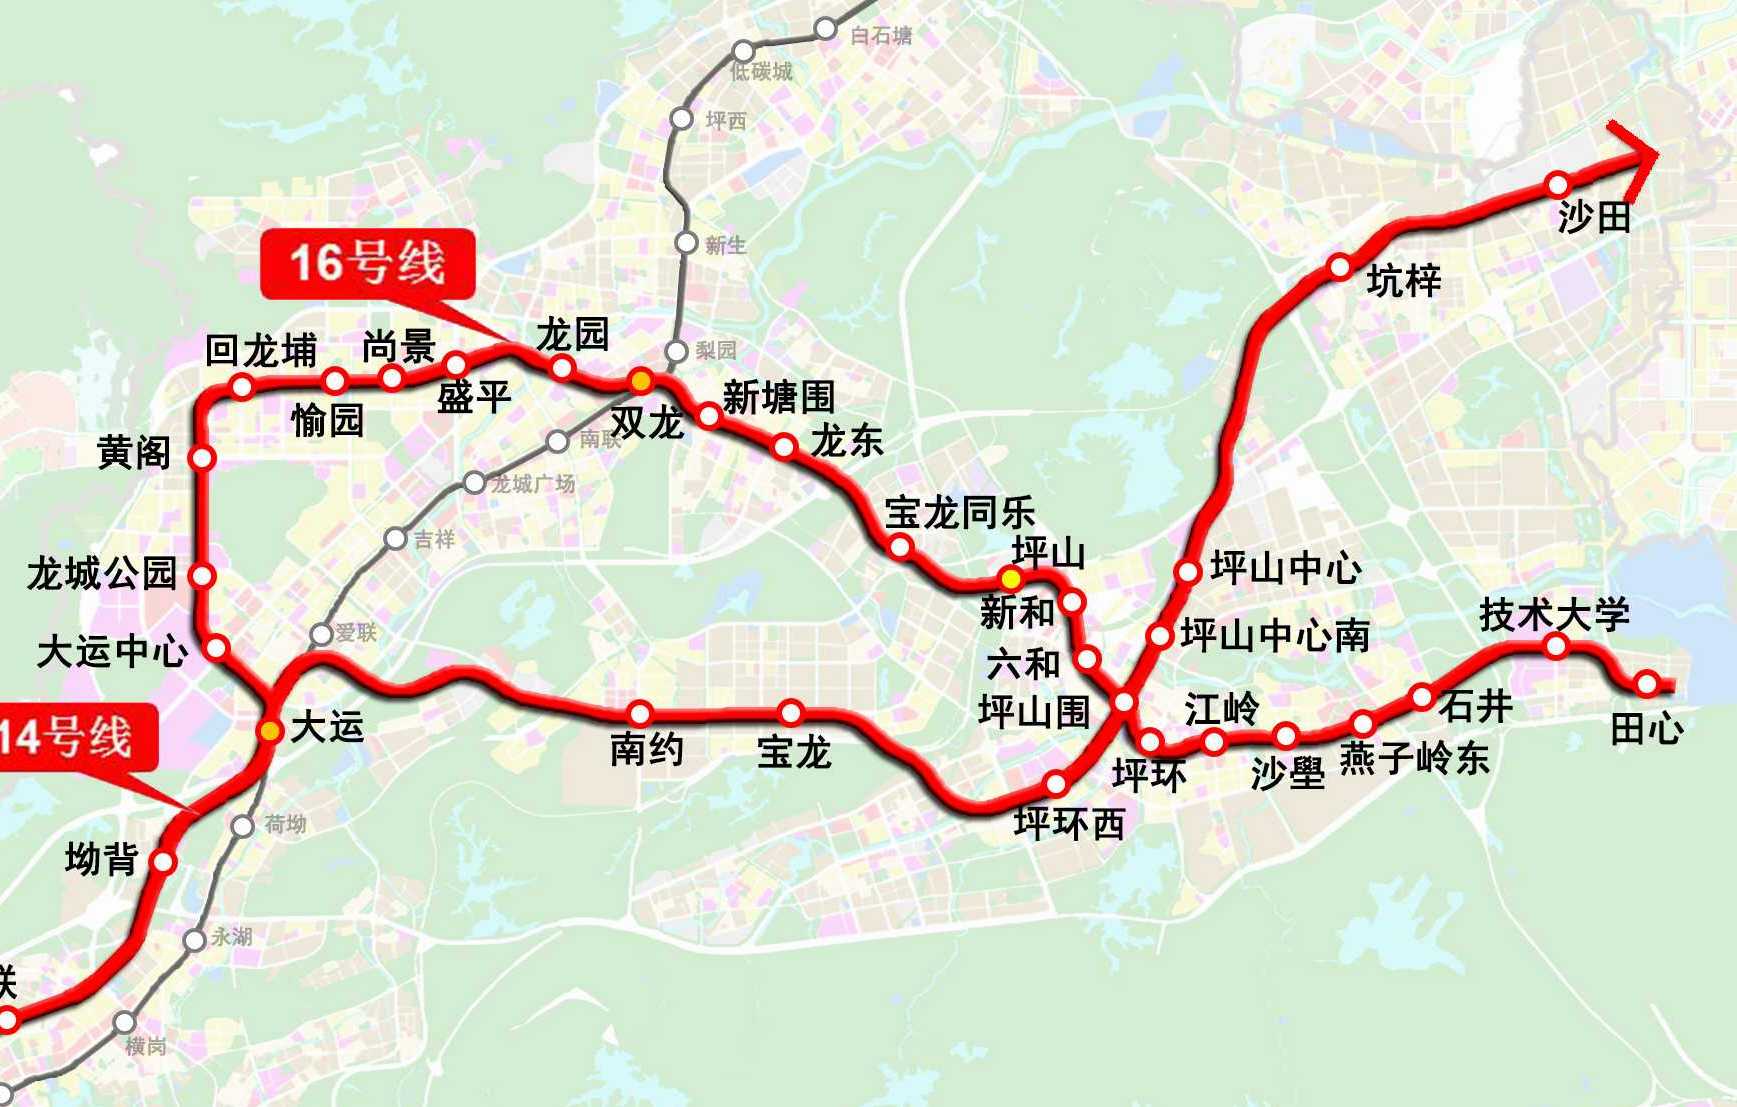 黃閣站(深圳捷運16號線站點)